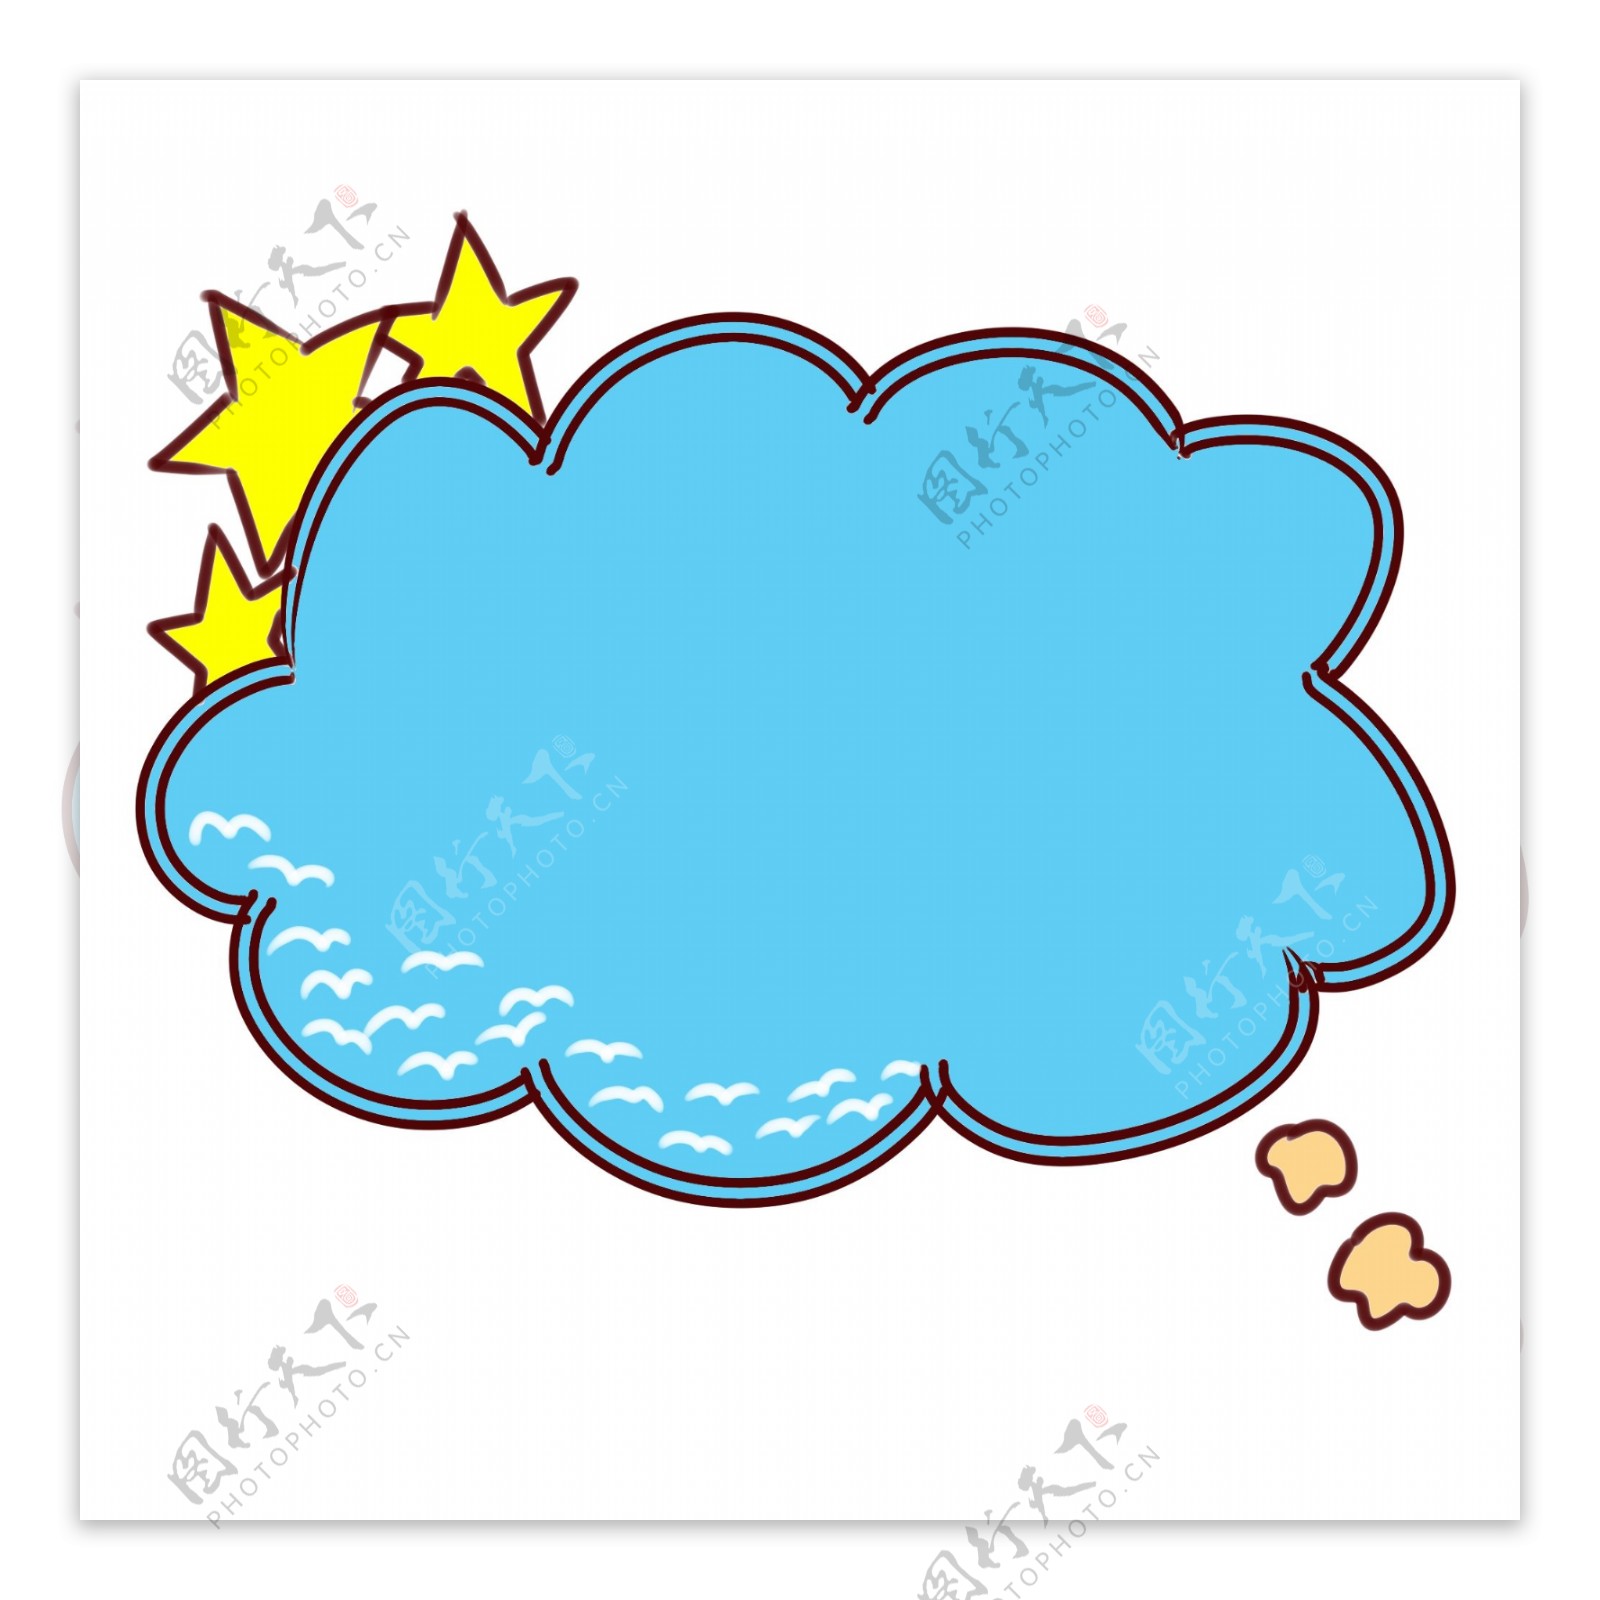 海鸥云朵气泡框插图